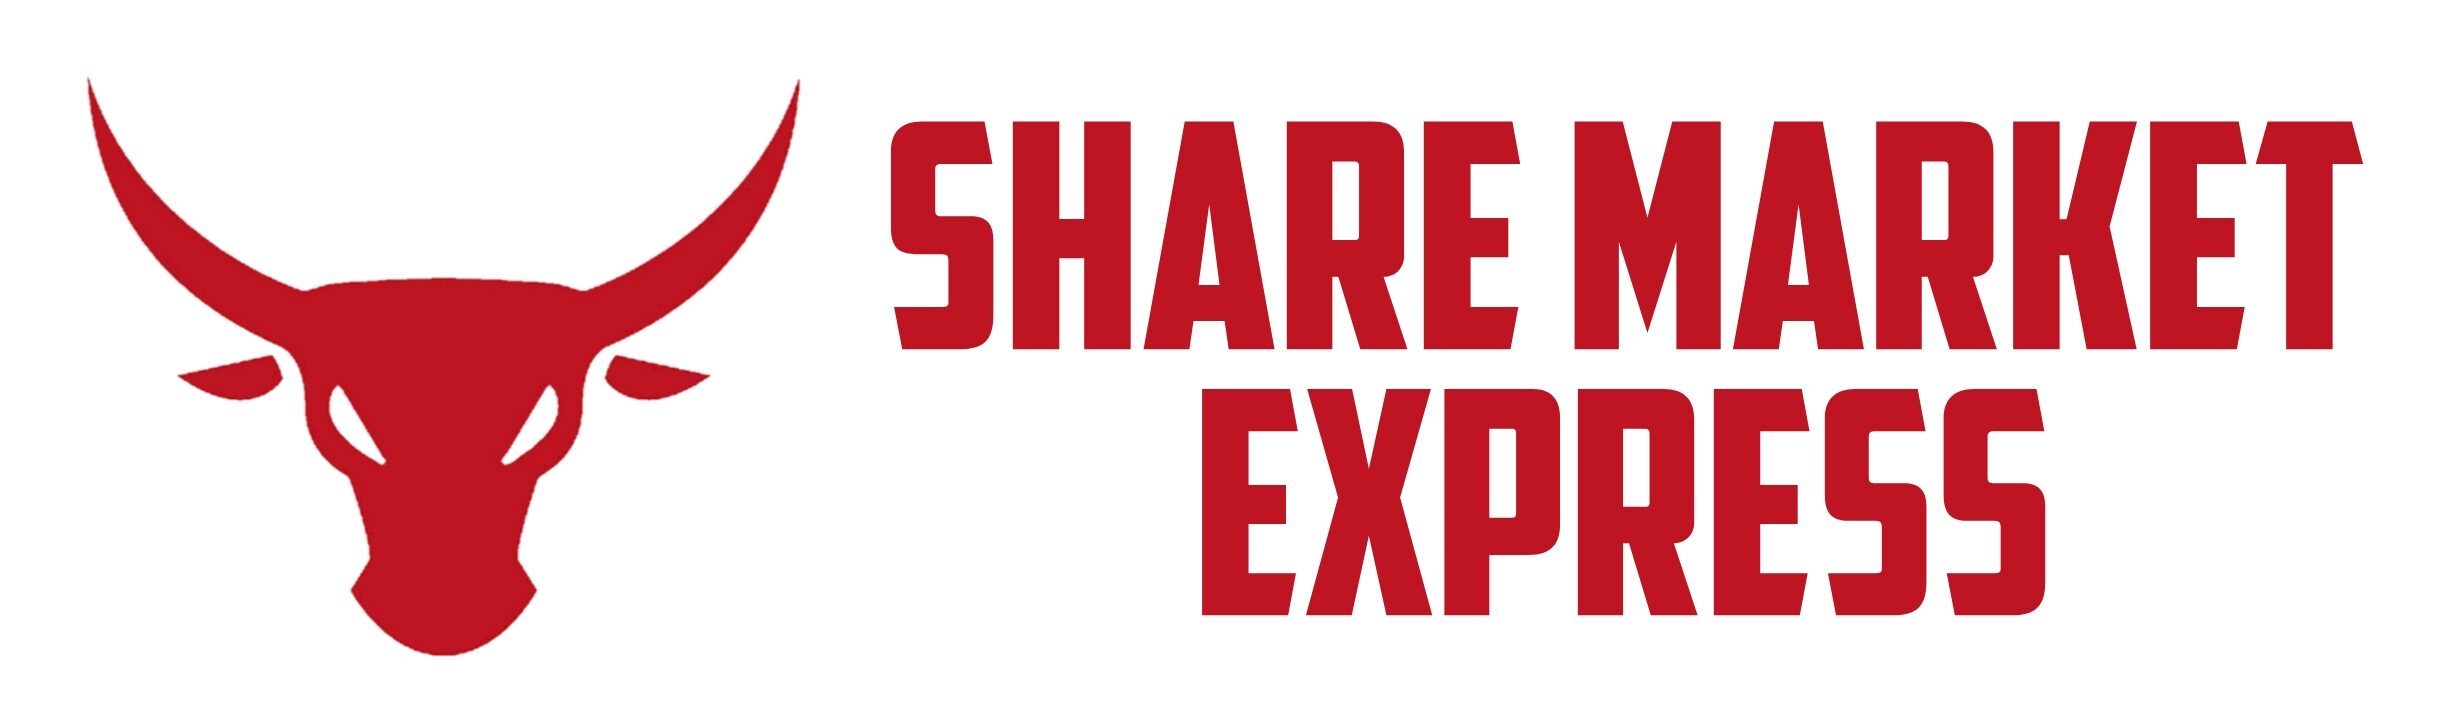 Share Market Express